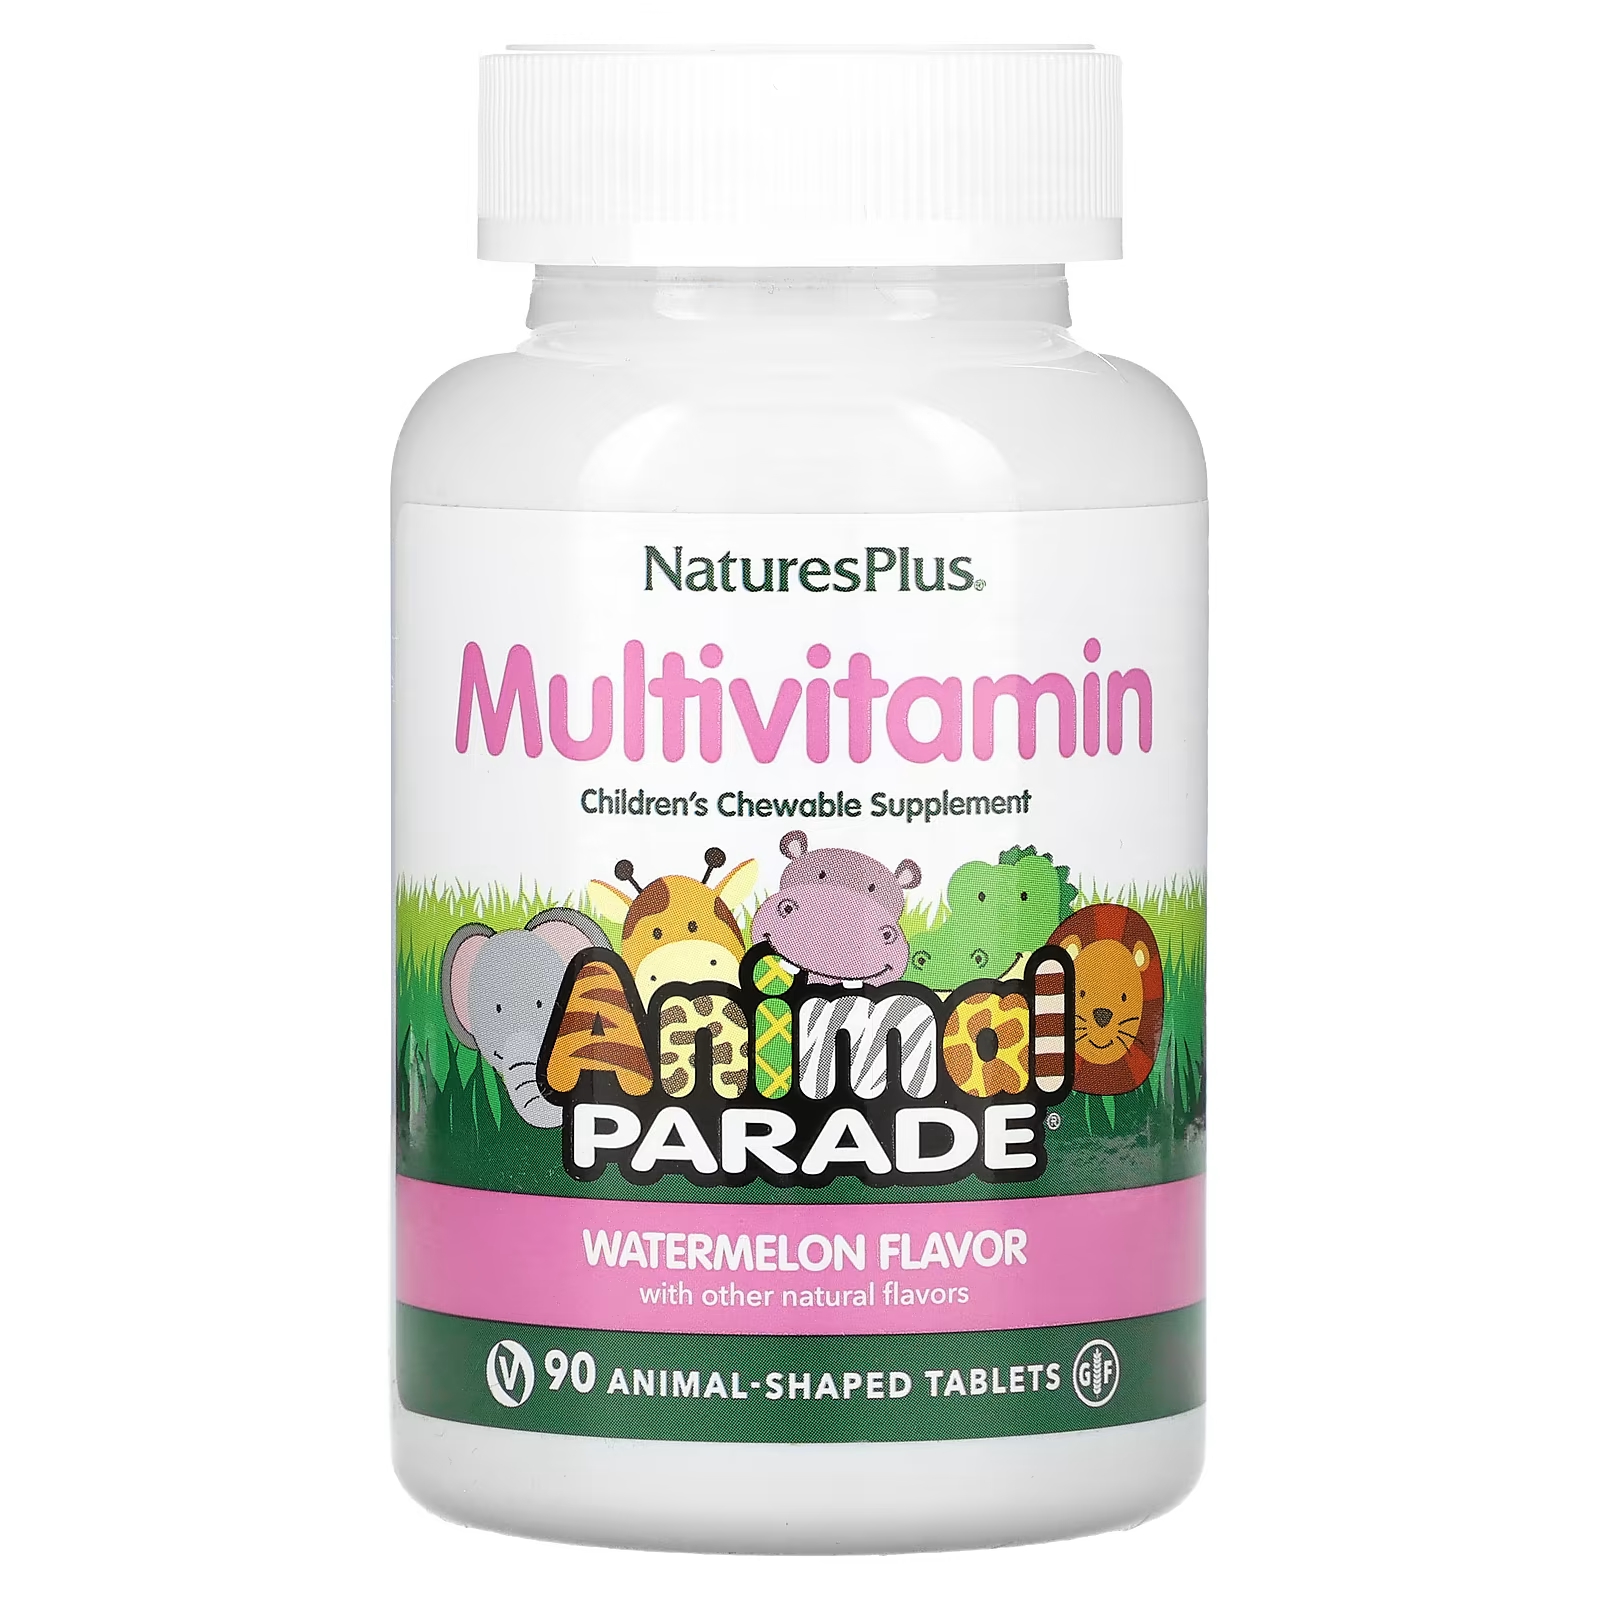 Мультивитамины NaturesPlus для детей со вкусом арбуза, 90 таблеток мультивитамины naturesplus с микроэлементами для детей со вкусом вишни 90 таблеток в форме животных